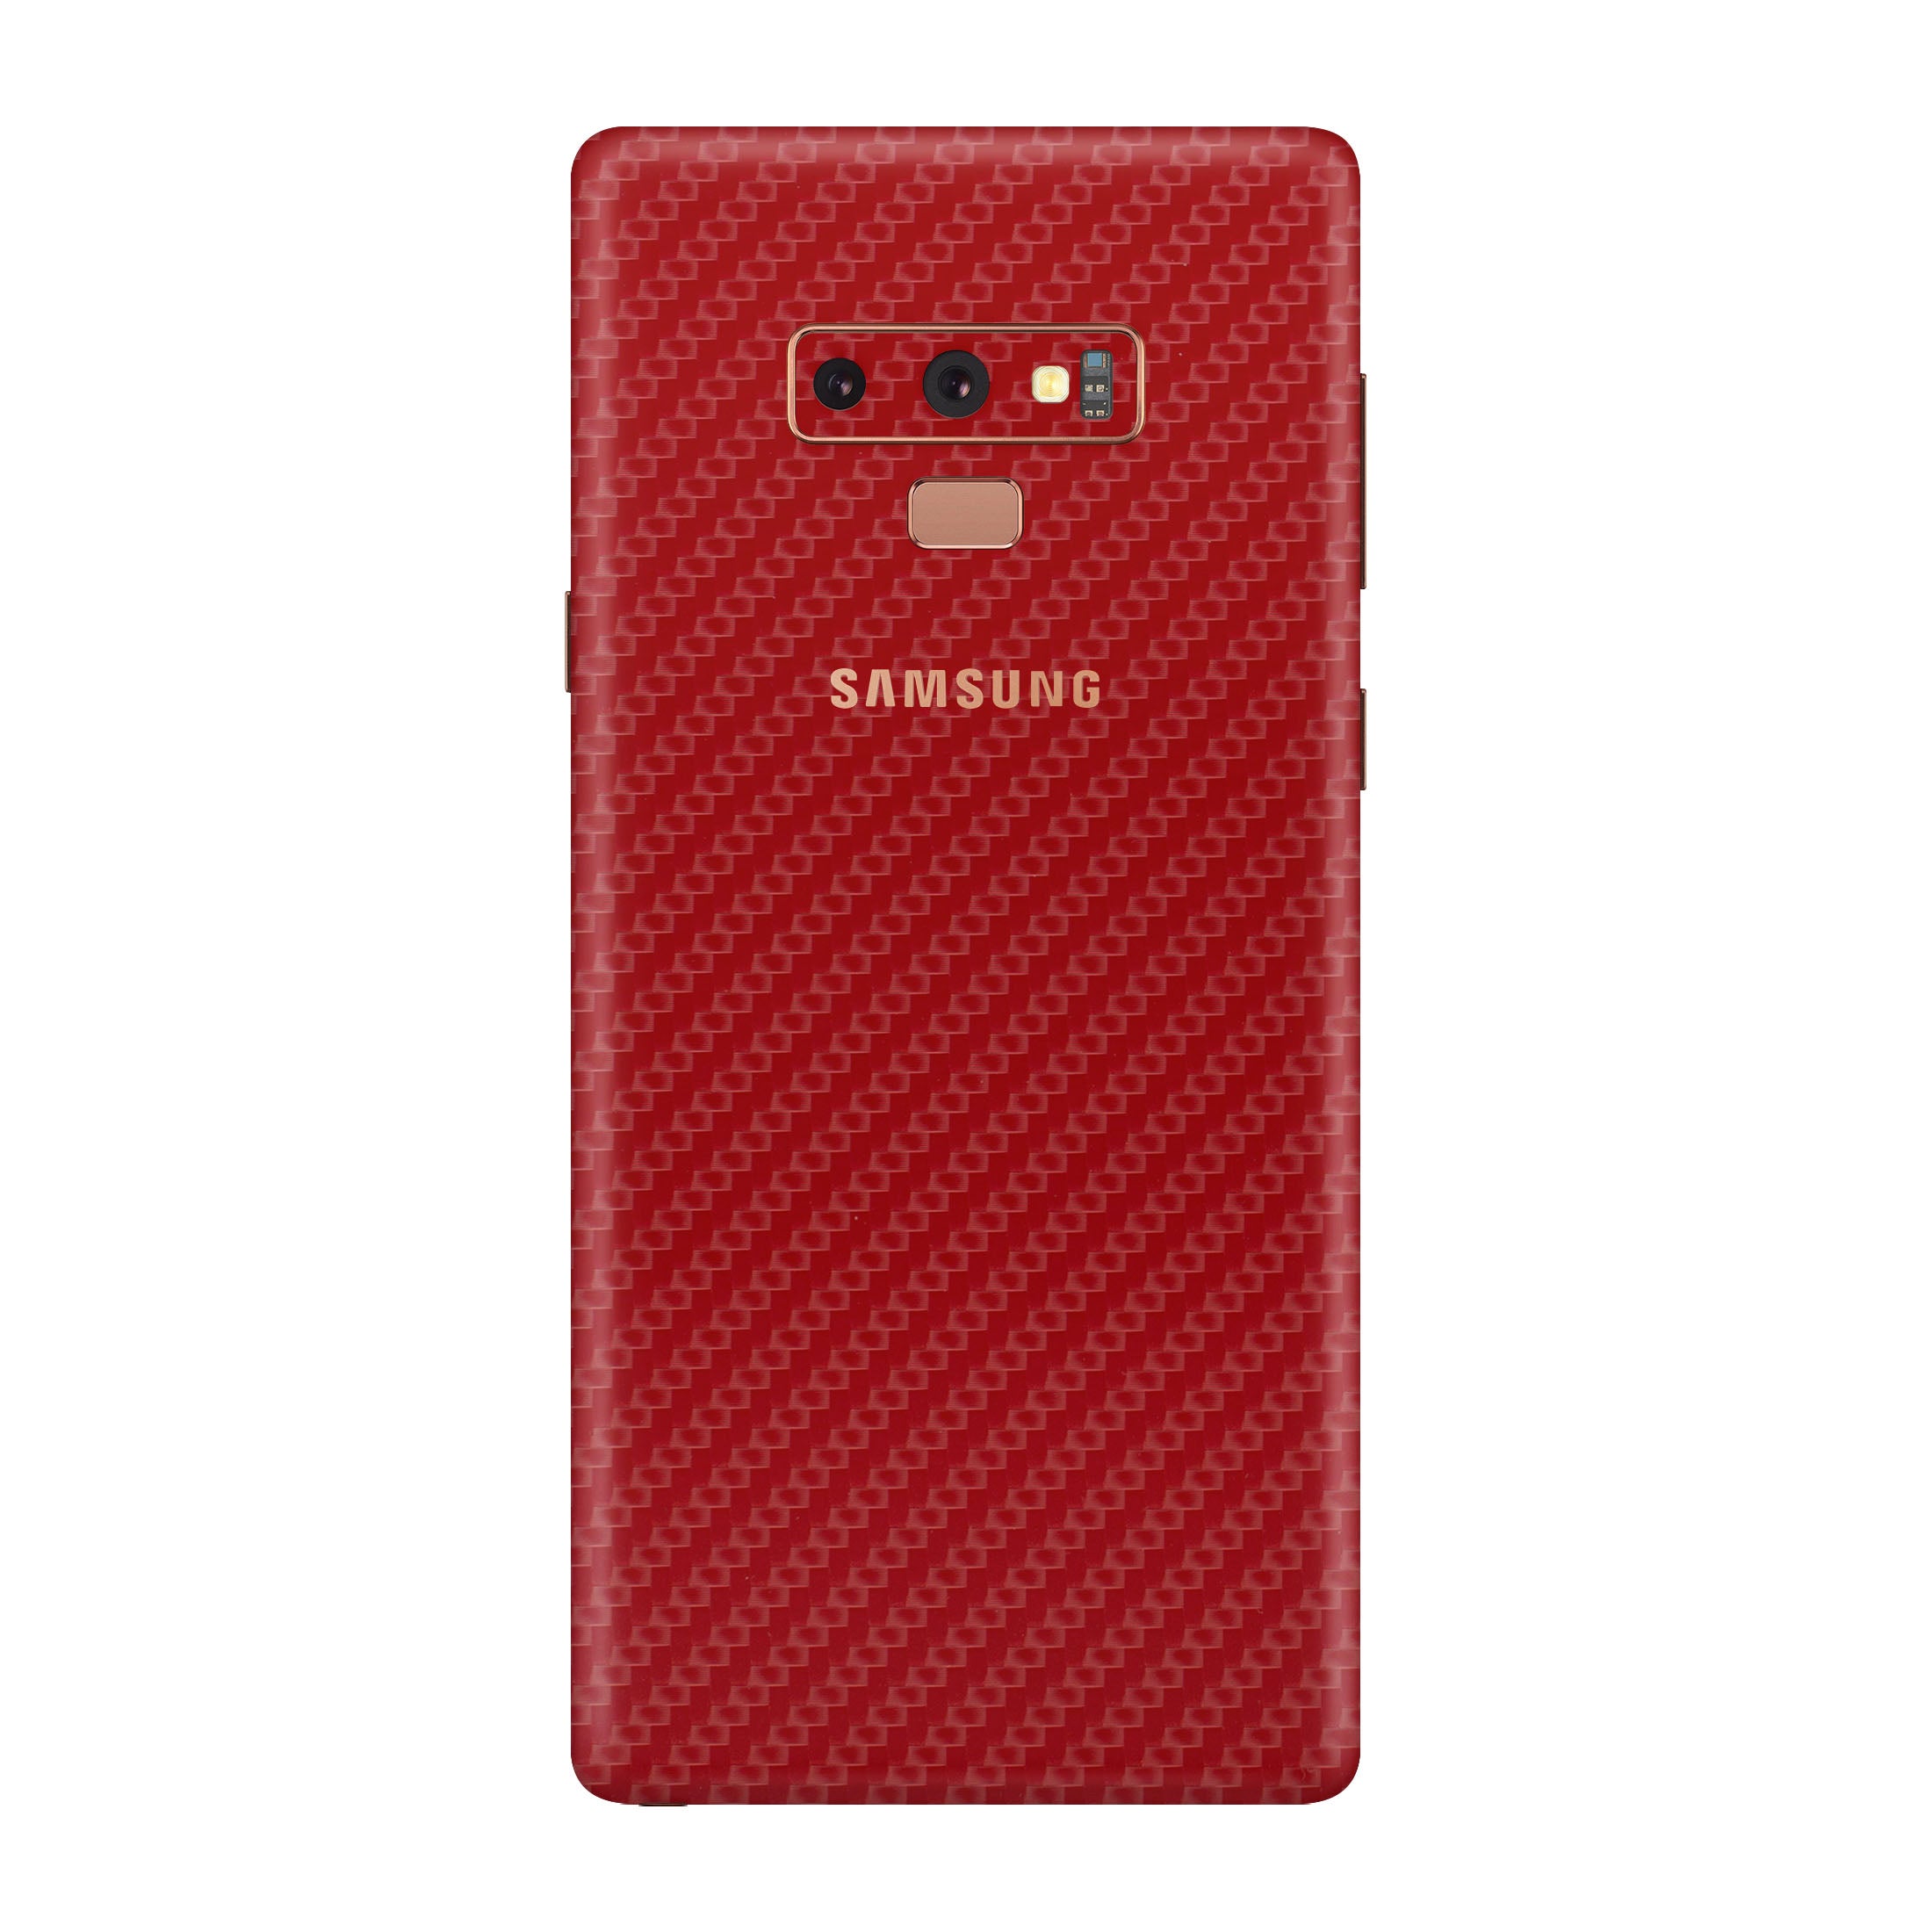 Carbon Fiber Red Skin for Samsung Note 9